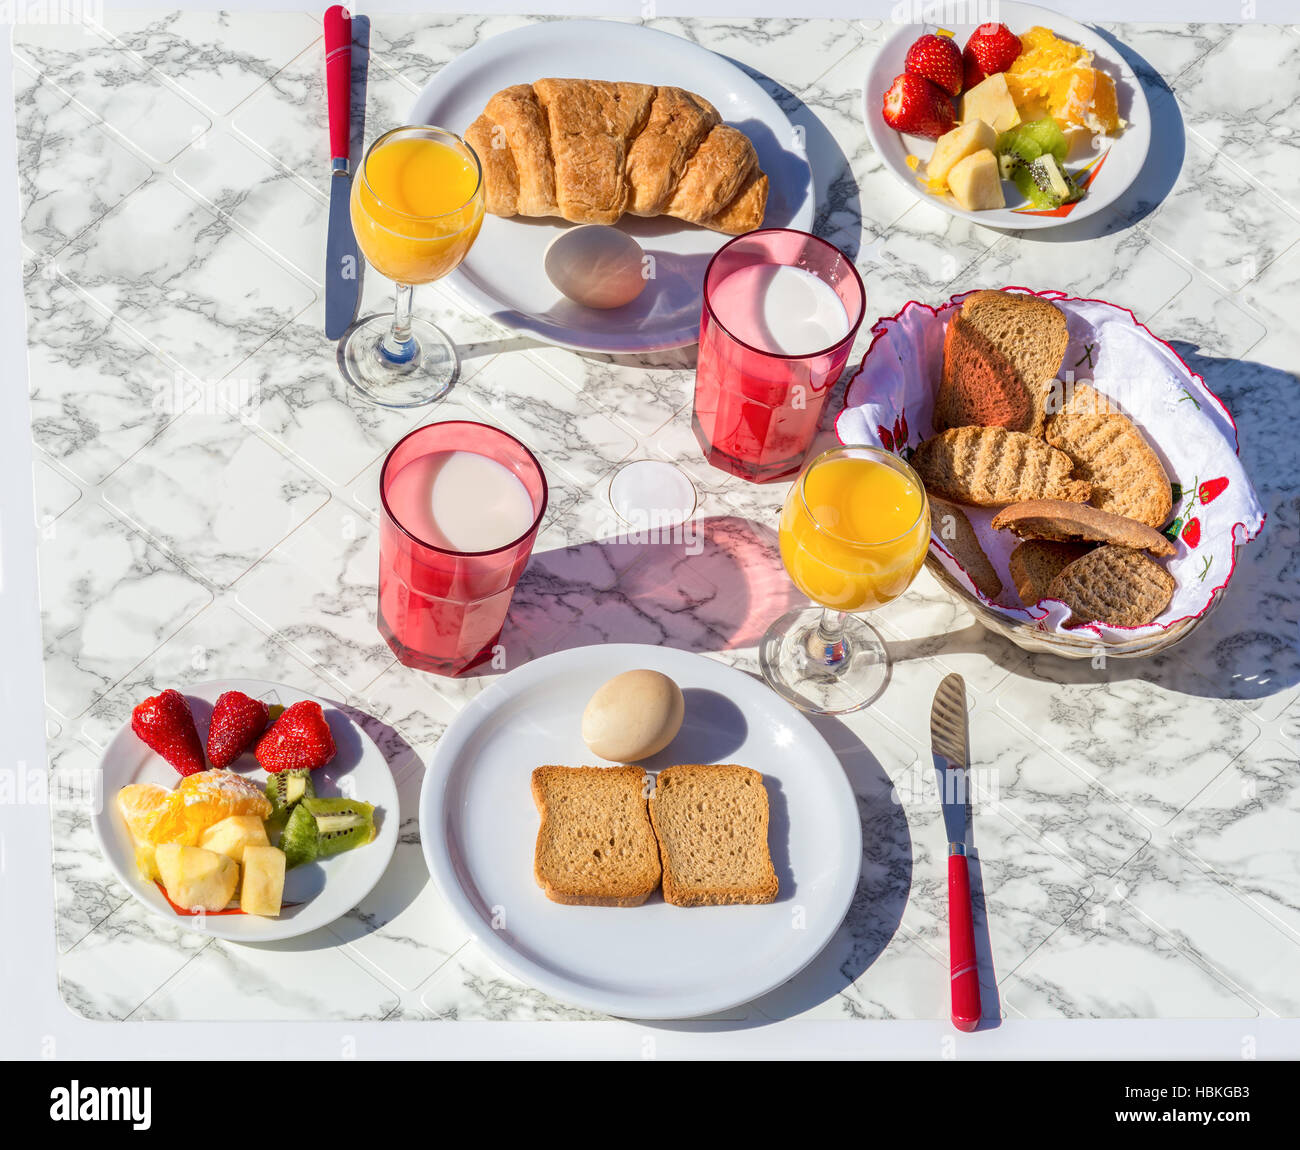 Establezca la tabla con los alimentos y bebidas para el desayuno Foto de stock